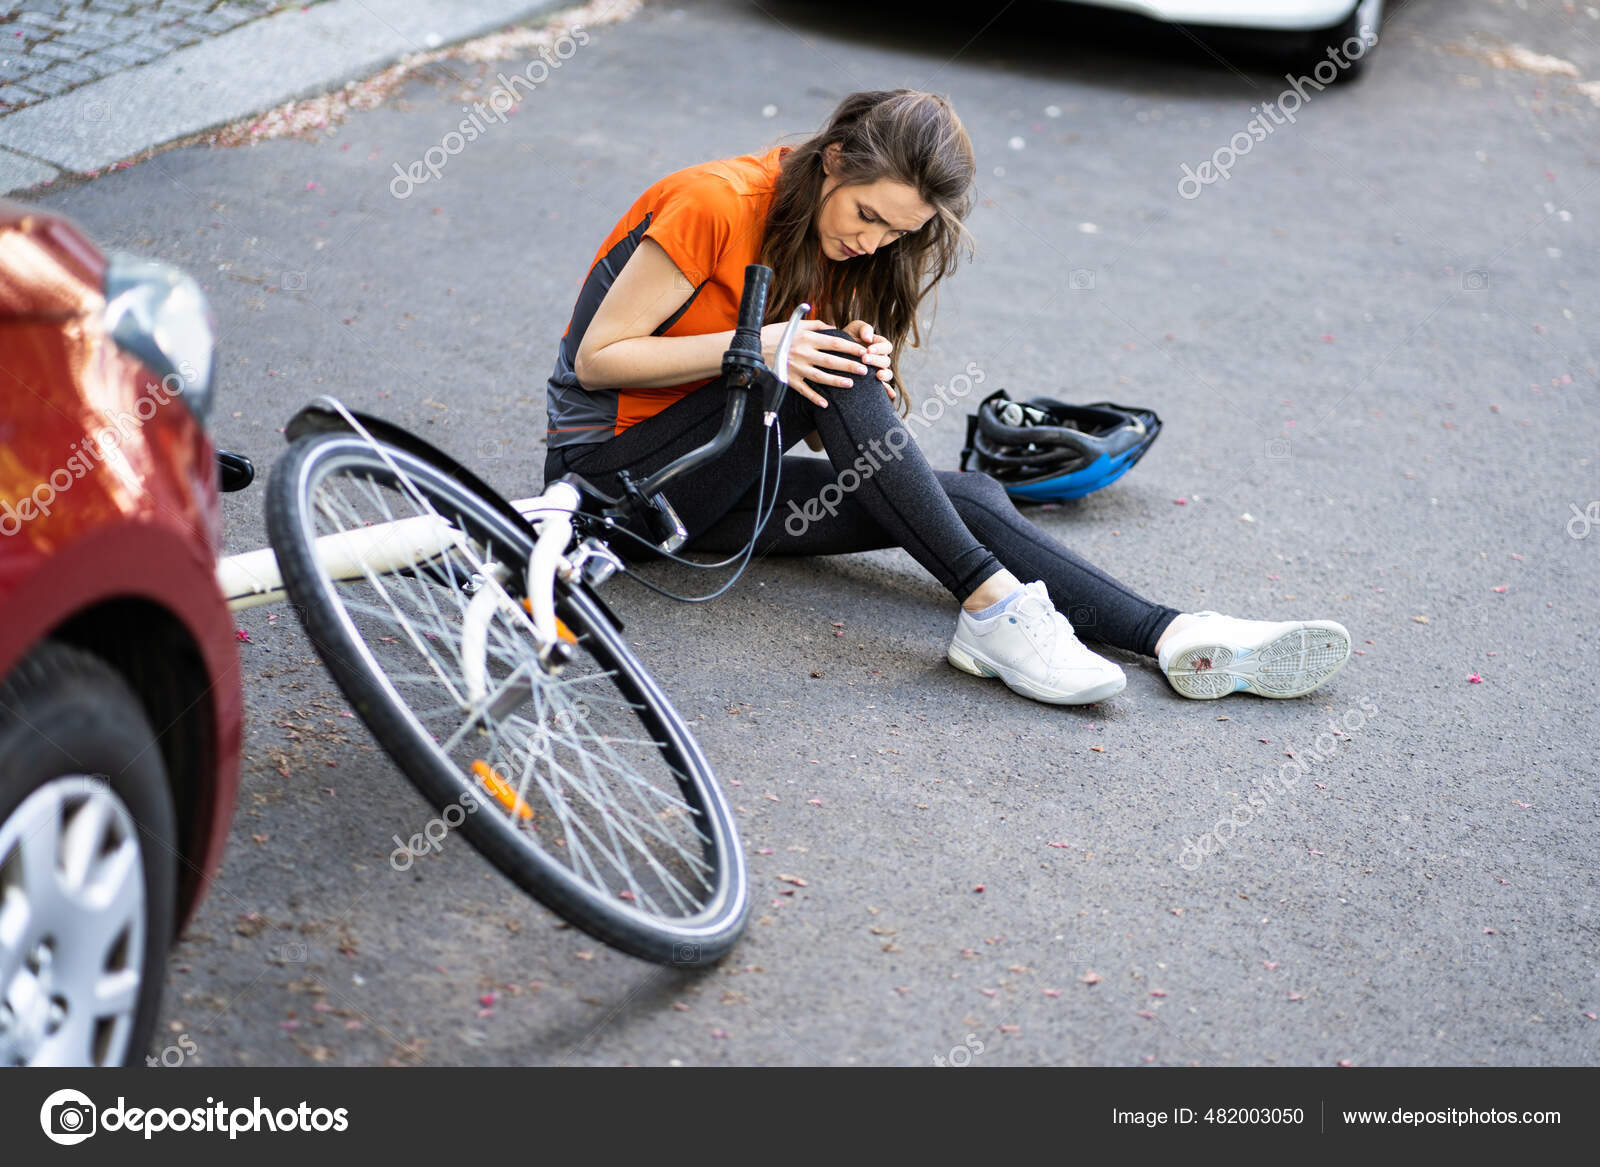 Дорожные несчастные случаи. Несчастные случаи с велосипедистами на дороге. Велосипедист на станке. Машина велосипед авария картинка.